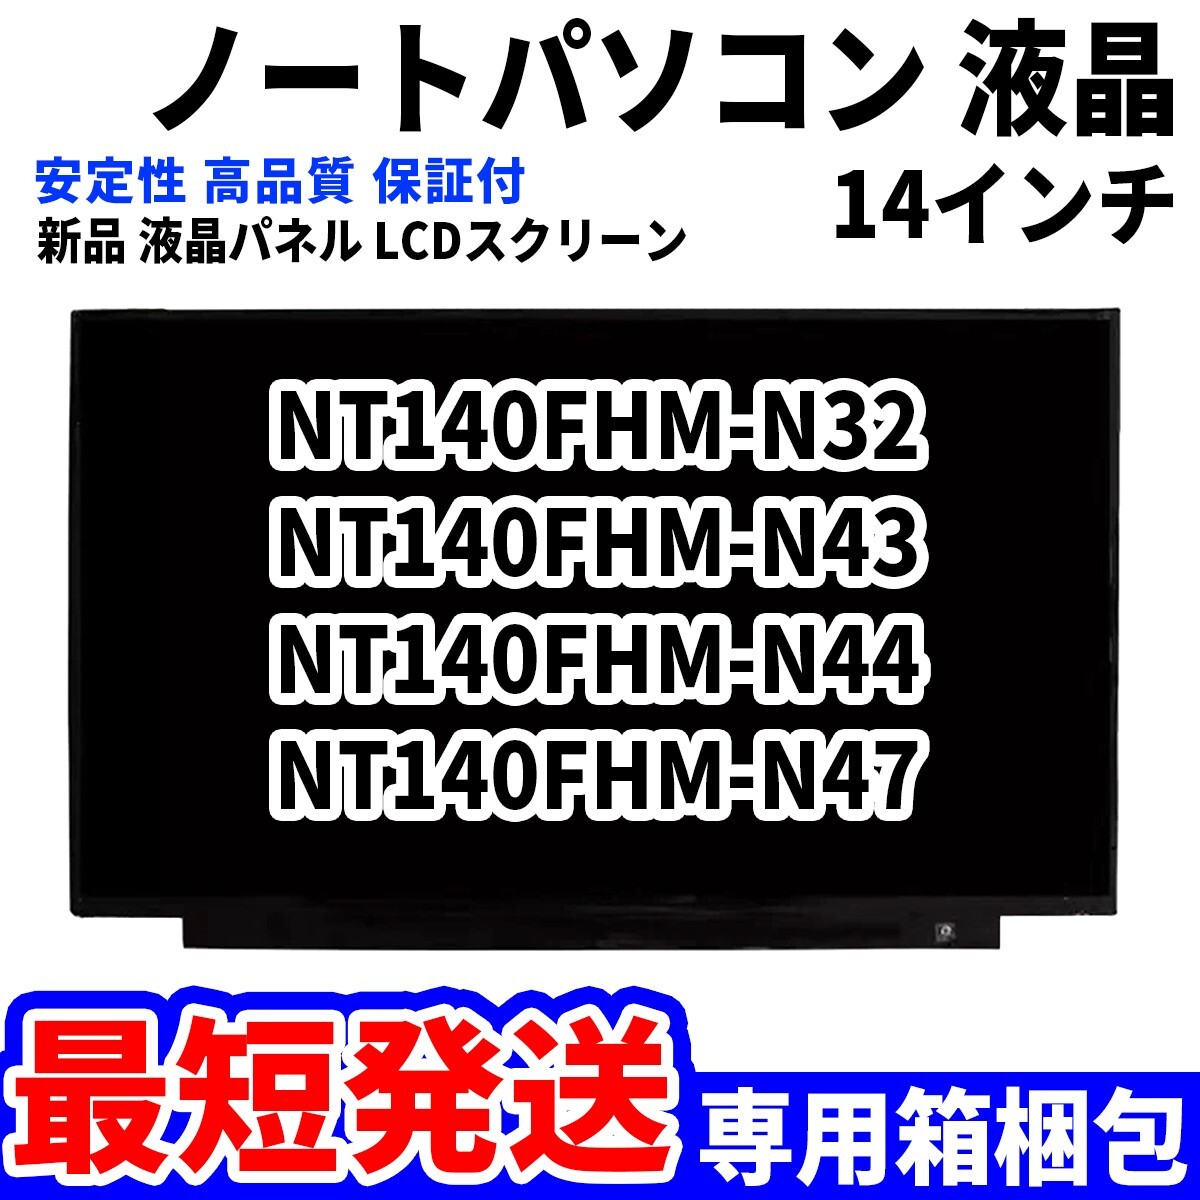 【最短発送】パソコン 液晶パネル NT140FHM-N32 NT140FHM-N43 NT140FHM-N44 NT140FHM-N47 14インチ 高品質 LCD ディスプレイ 交換 D-090_画像1